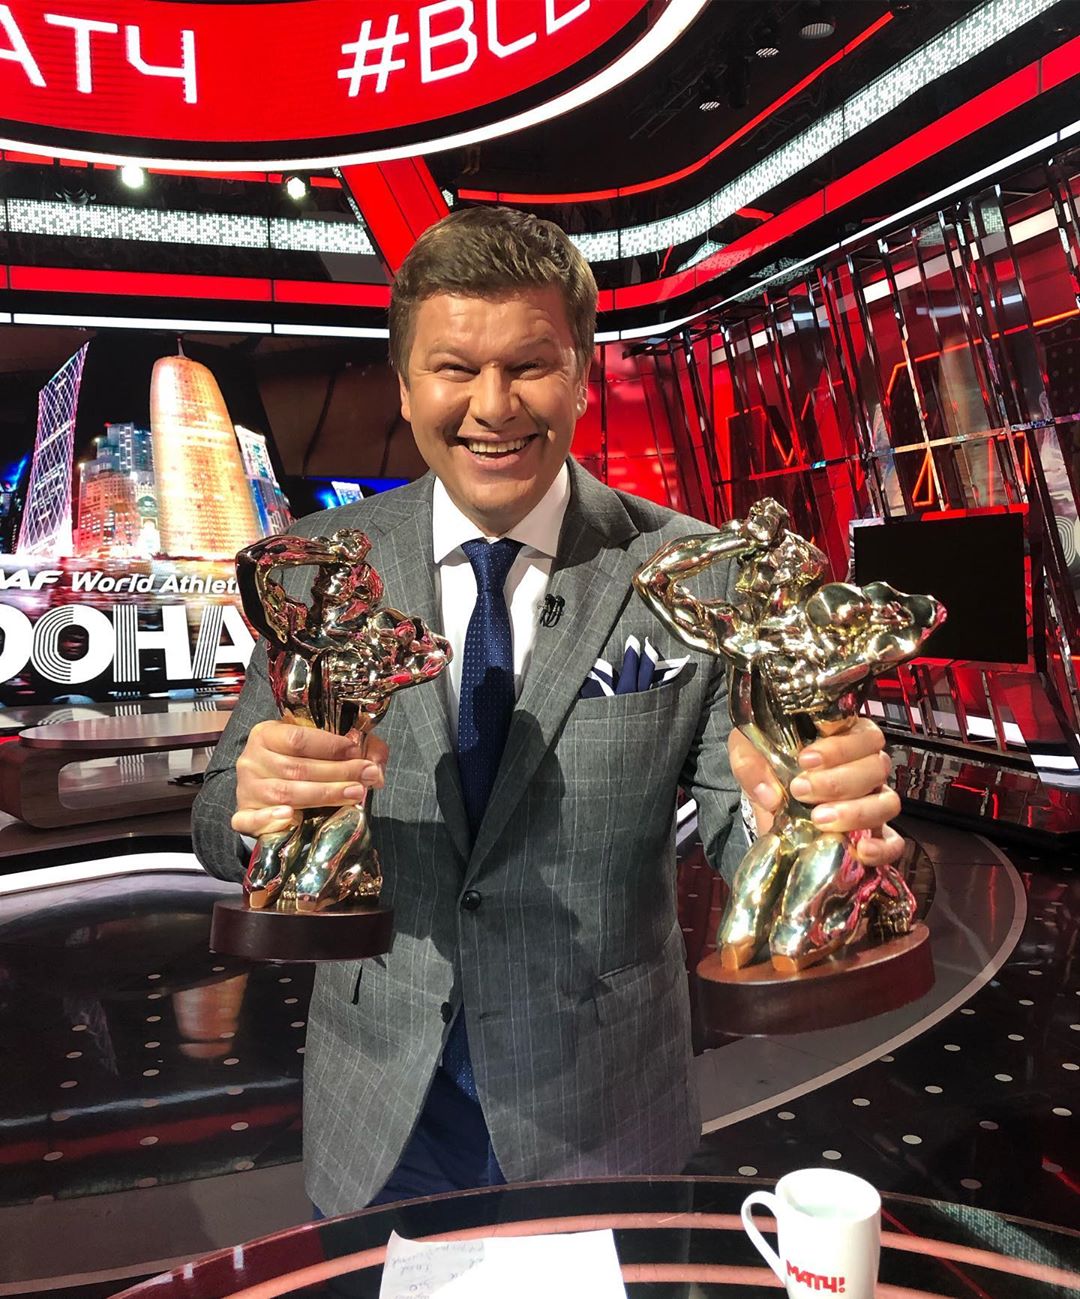 Губерниев — лучший спортивный комментатор и ведущий информационной программы! Теперь у него 4 статуэтки Тэфи и это рекорд России среди спорт журналистов!